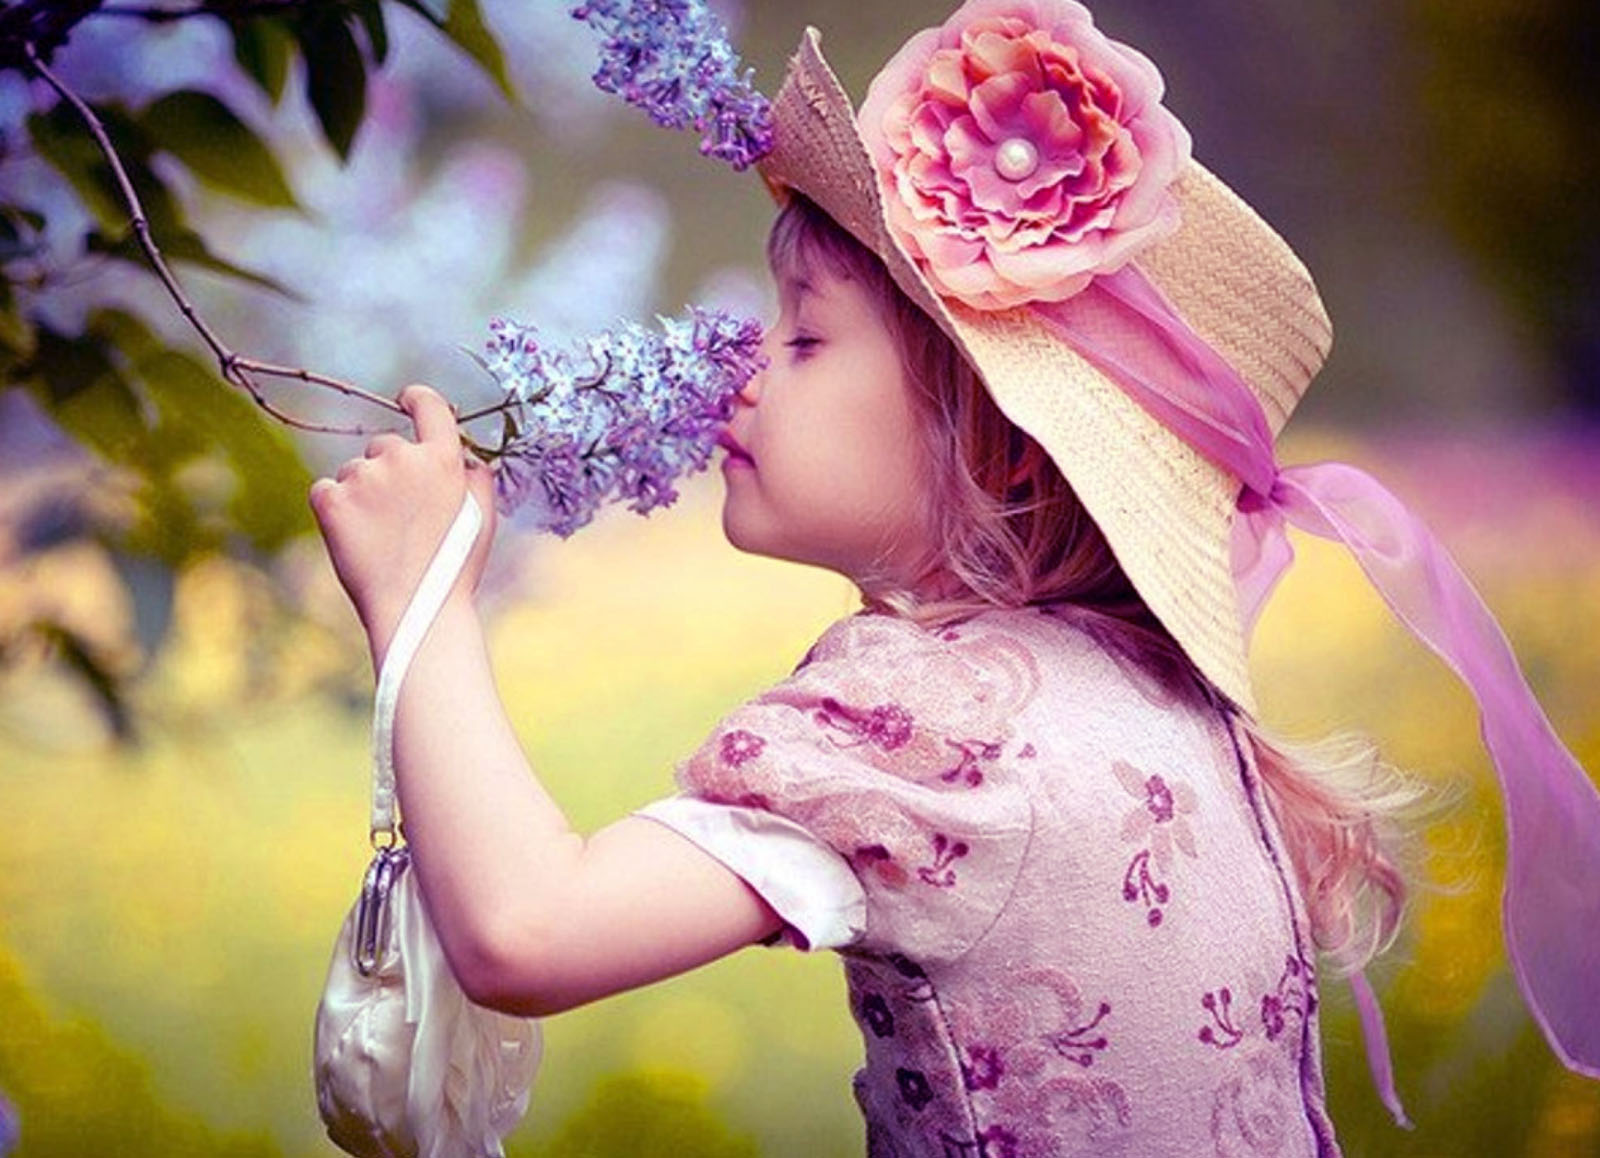 Благоухание ароматов. Цветы радости жизни. Дети в цветах. Человек цветок. Счастье весной.